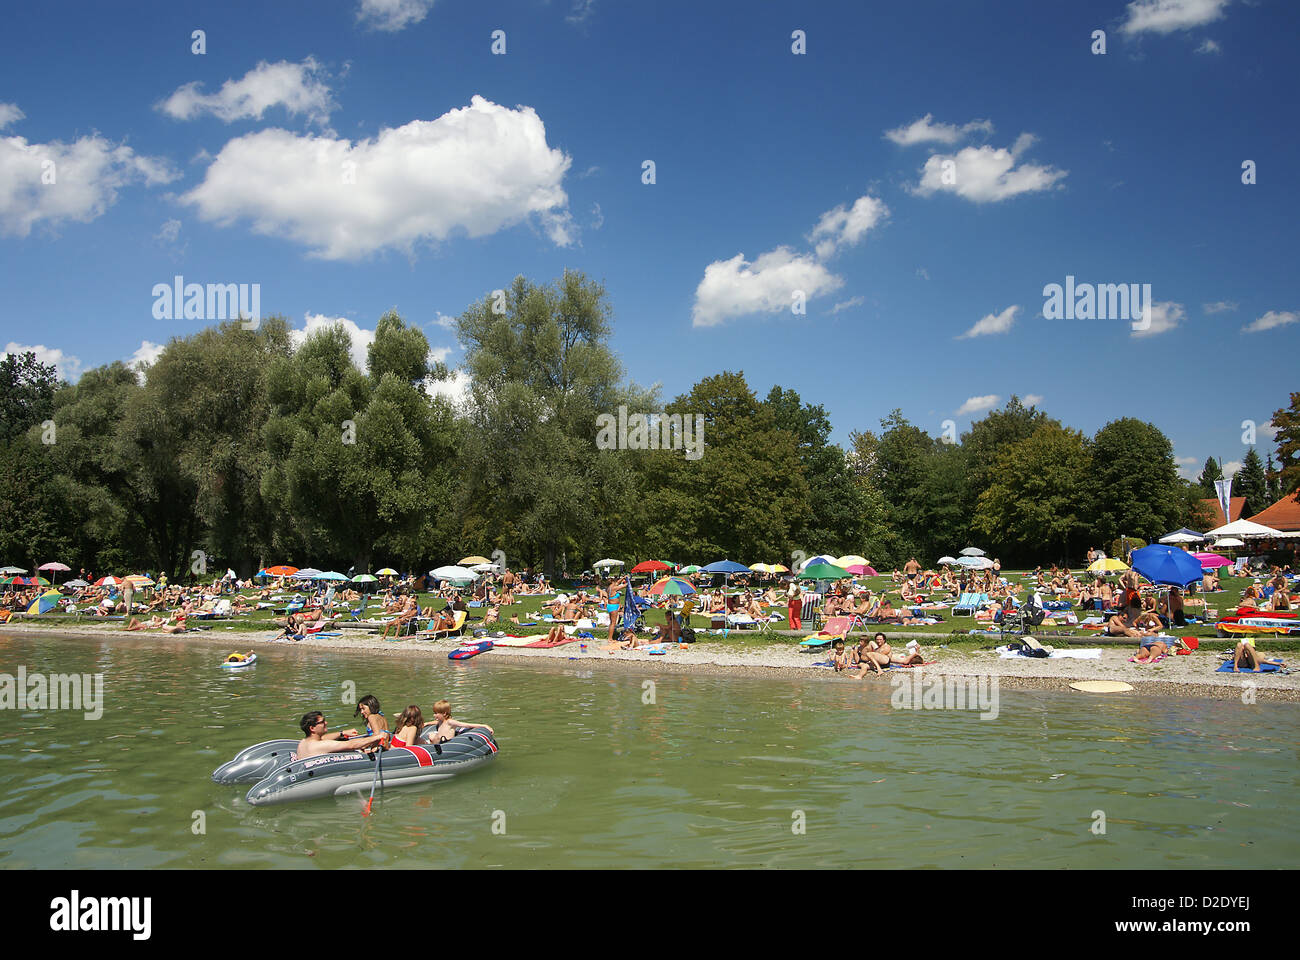 Menschen, Sonne, Bad, Starnberger See, Bayern Stockfotografie - Alamy